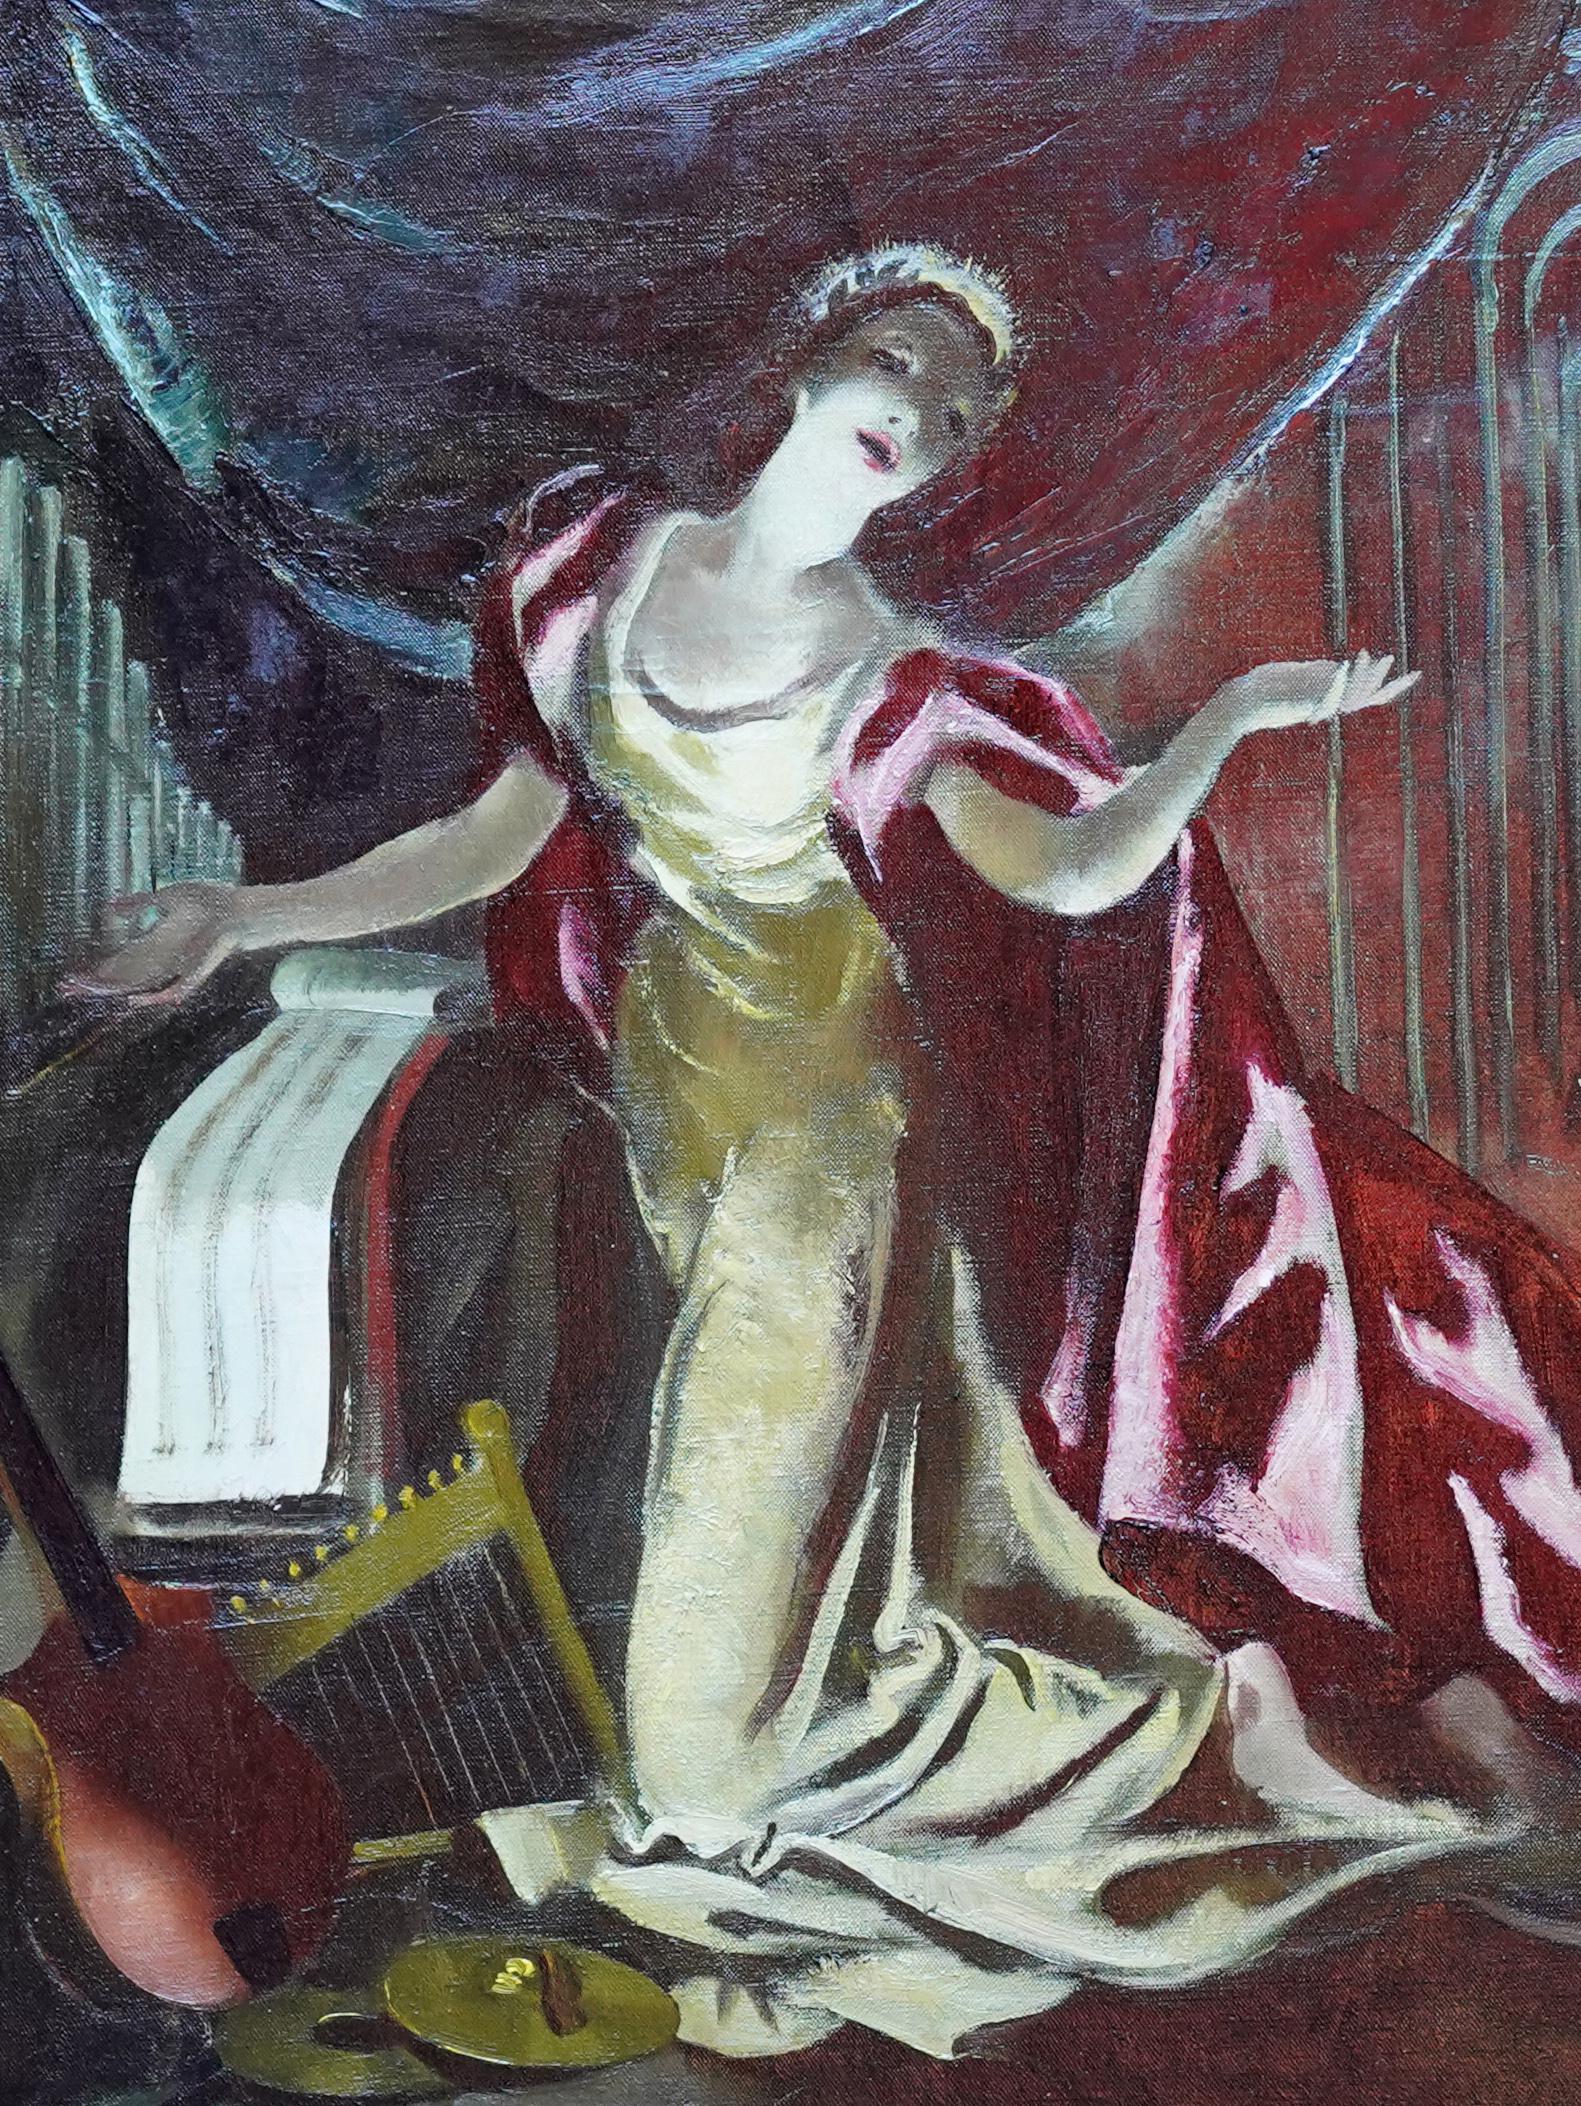 Ce superbe portrait théâtral écossais est une peinture à l'huile de l'artiste féminine Doris Zinkeisen. Peinte vers 1960, elle représente une femme vêtue d'une cape rouge sur scène avec des instruments à ses pieds. Son visage est éclairé et il y a